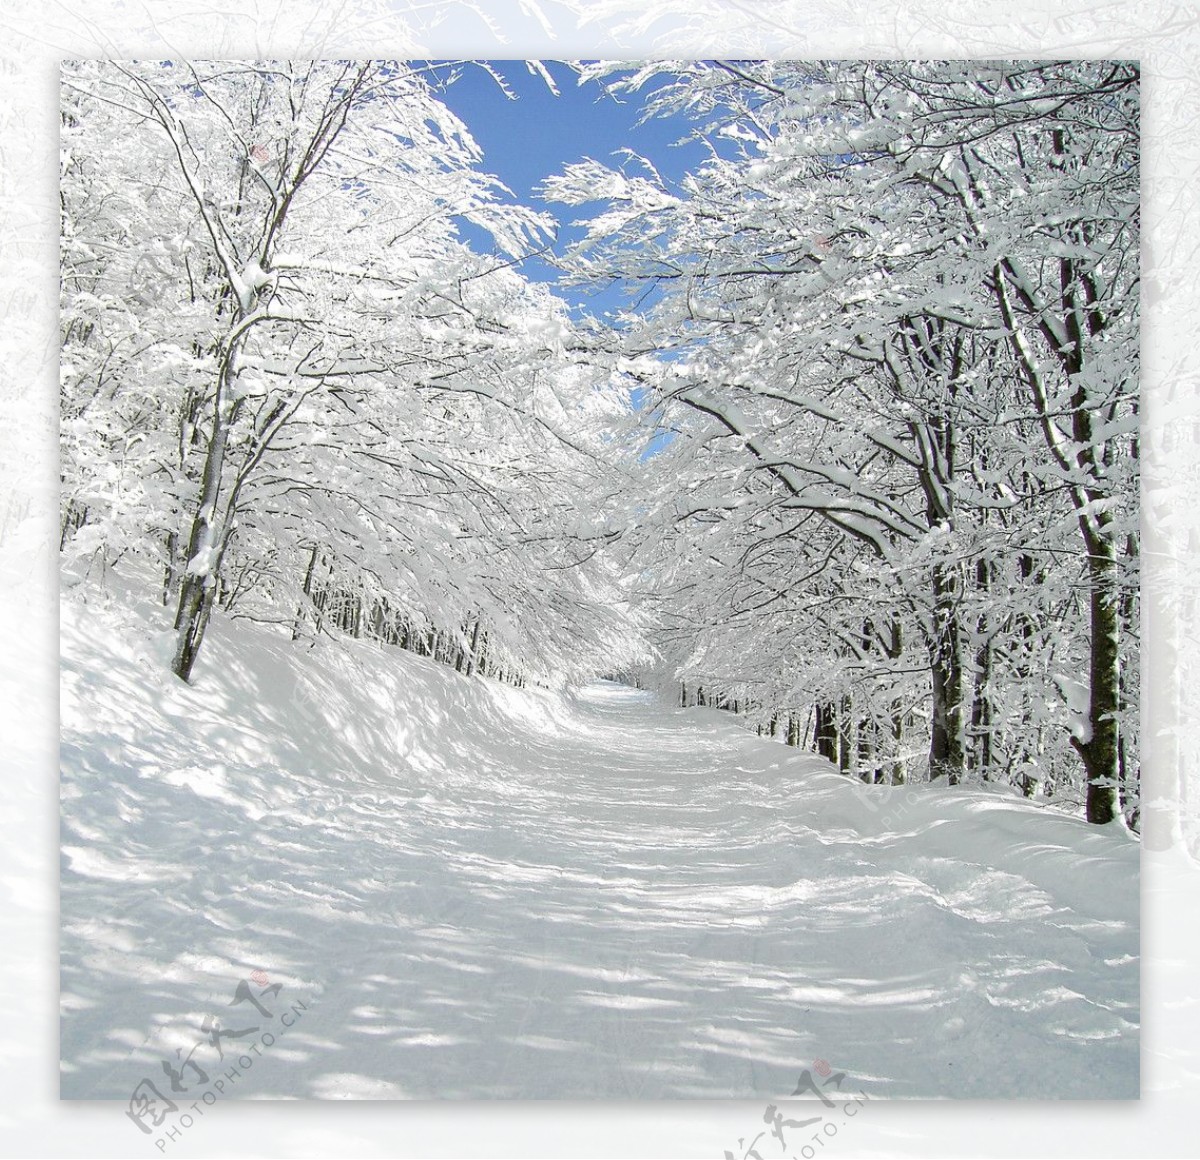 雪地的树木图片